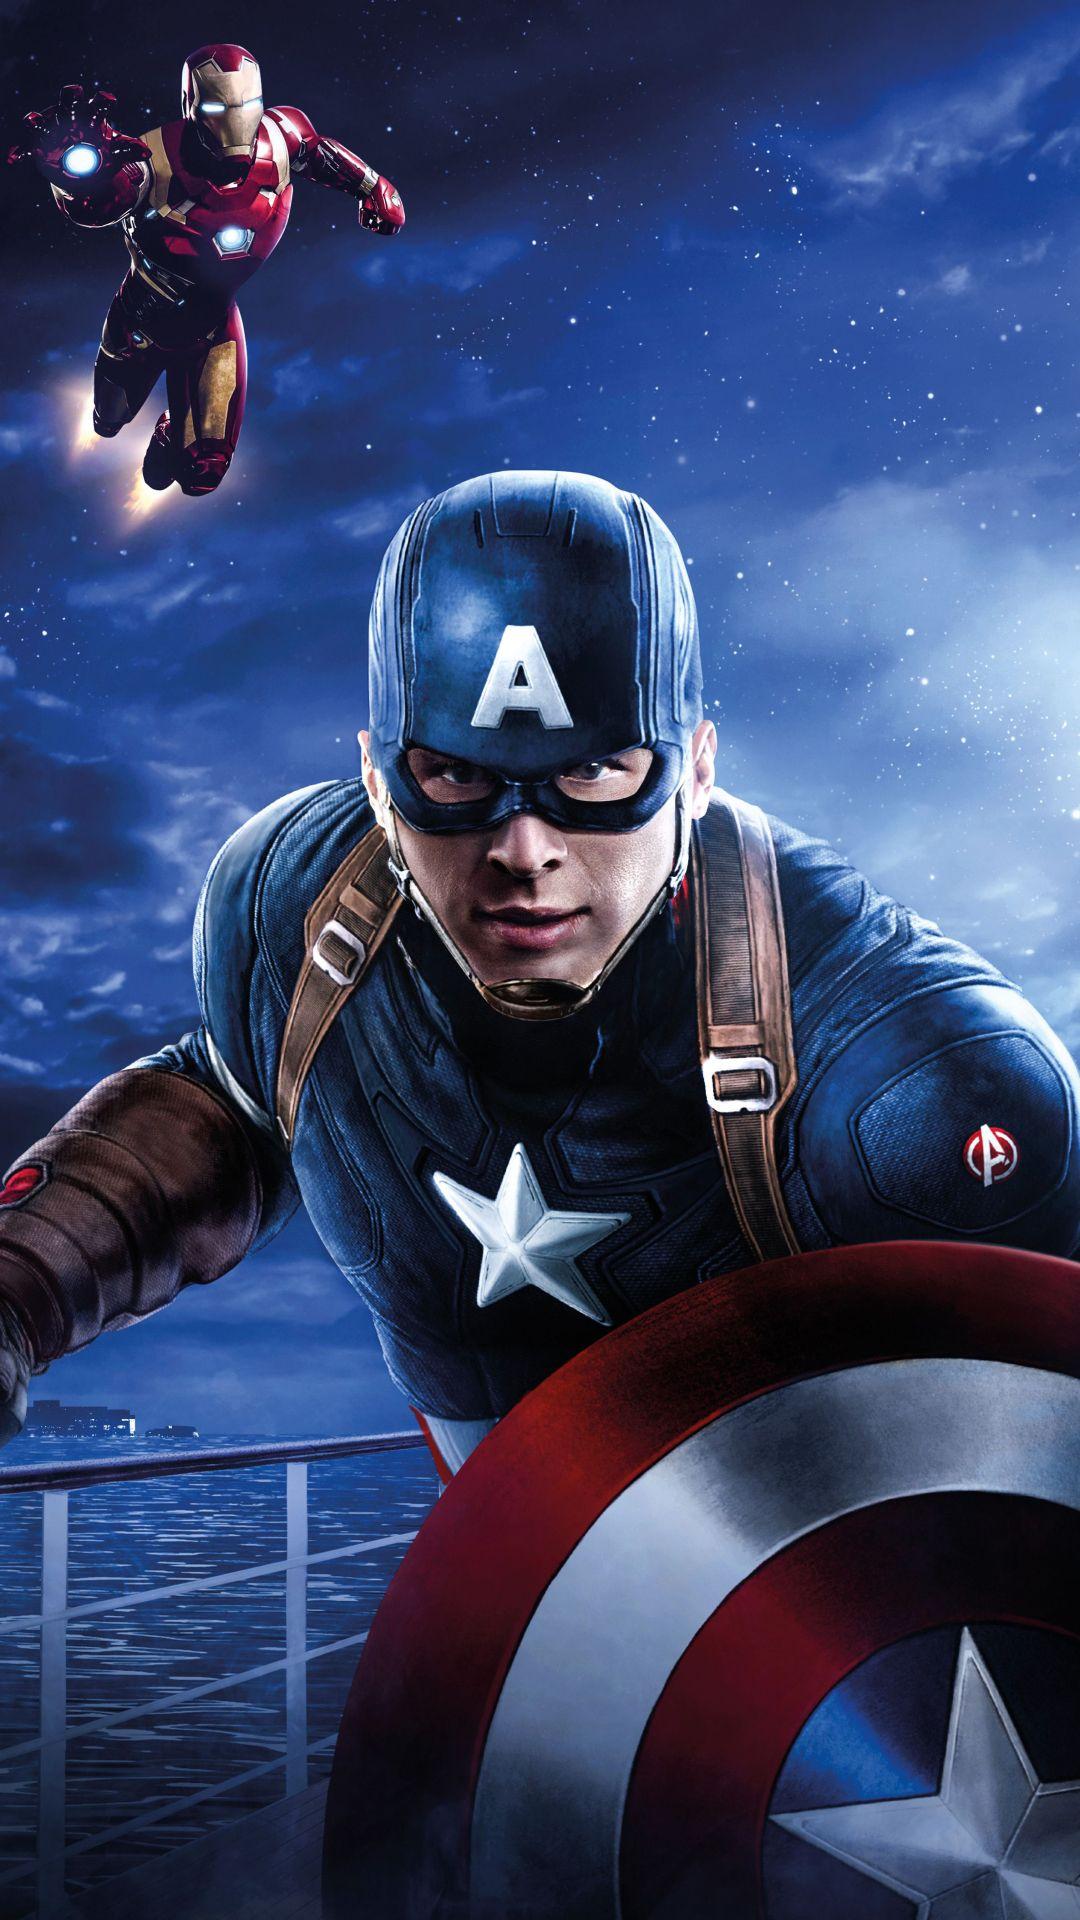 Comics / Avengers (1080x1920) Mobile Wallpaper. Marvel vingadores, Capitão america, Capitão américa marvel